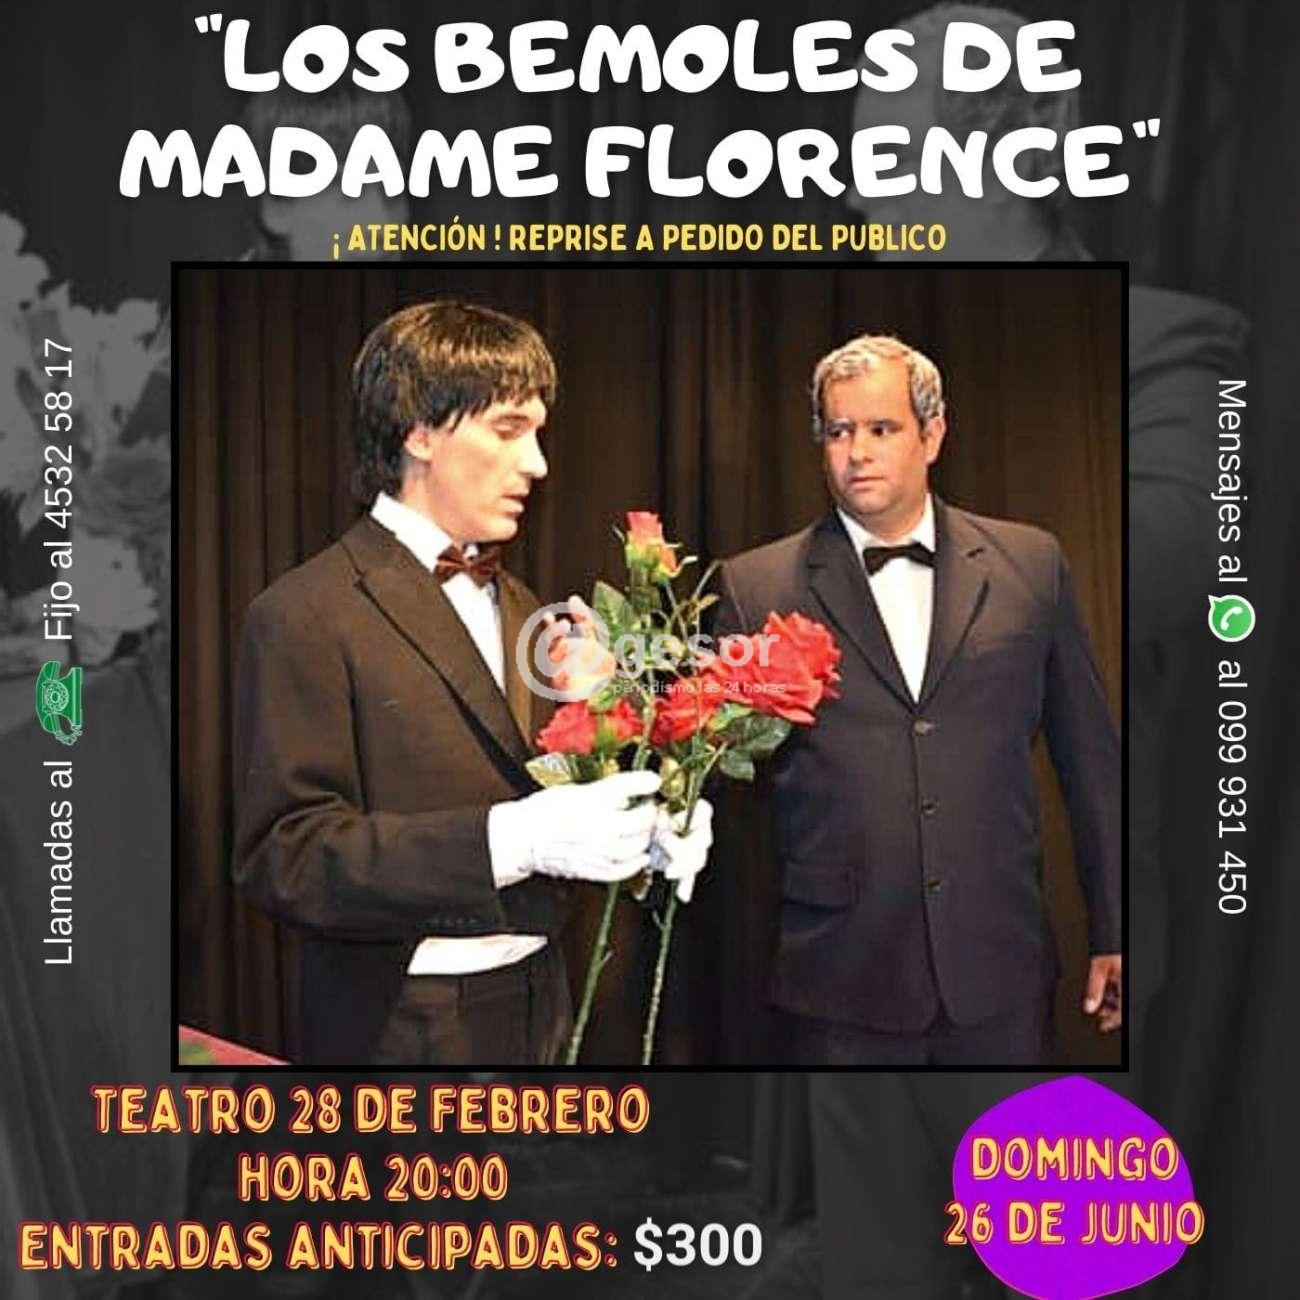 Con el auspicio de la Intendencia de Soriano, el próximo domingo 26 de junio se pondrá en escena nuevamente, y a pedido del público, la obra teatral “Los Bemoles de Madame Florence” por parte del elenco Enrique Guarnero.